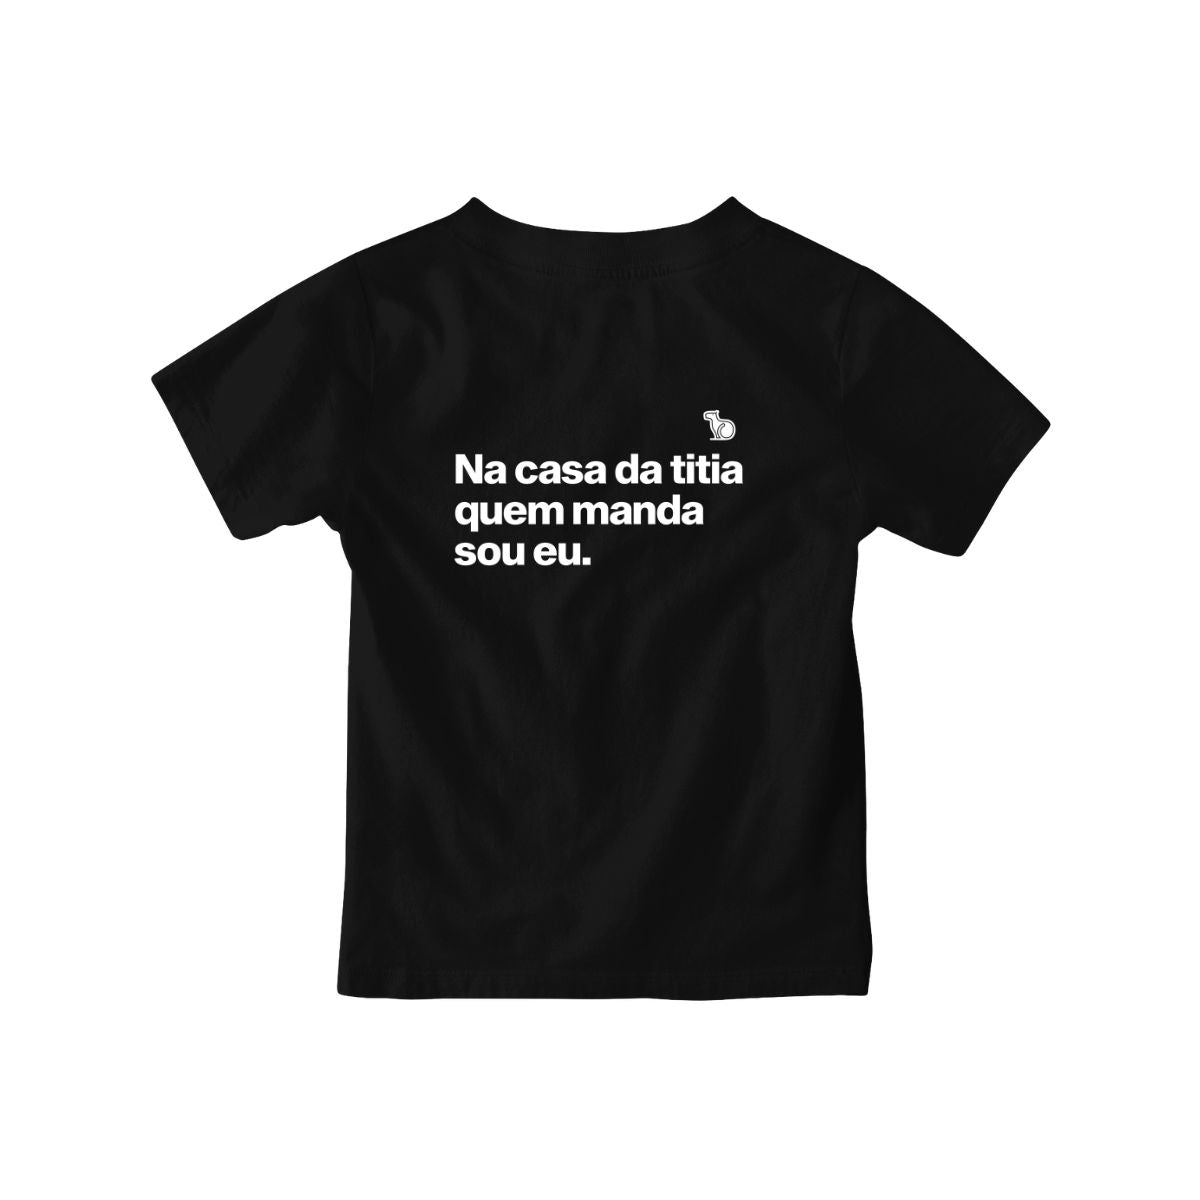 Camiseta infantil preta com a frase "na casa da titia quem manda sou eu."